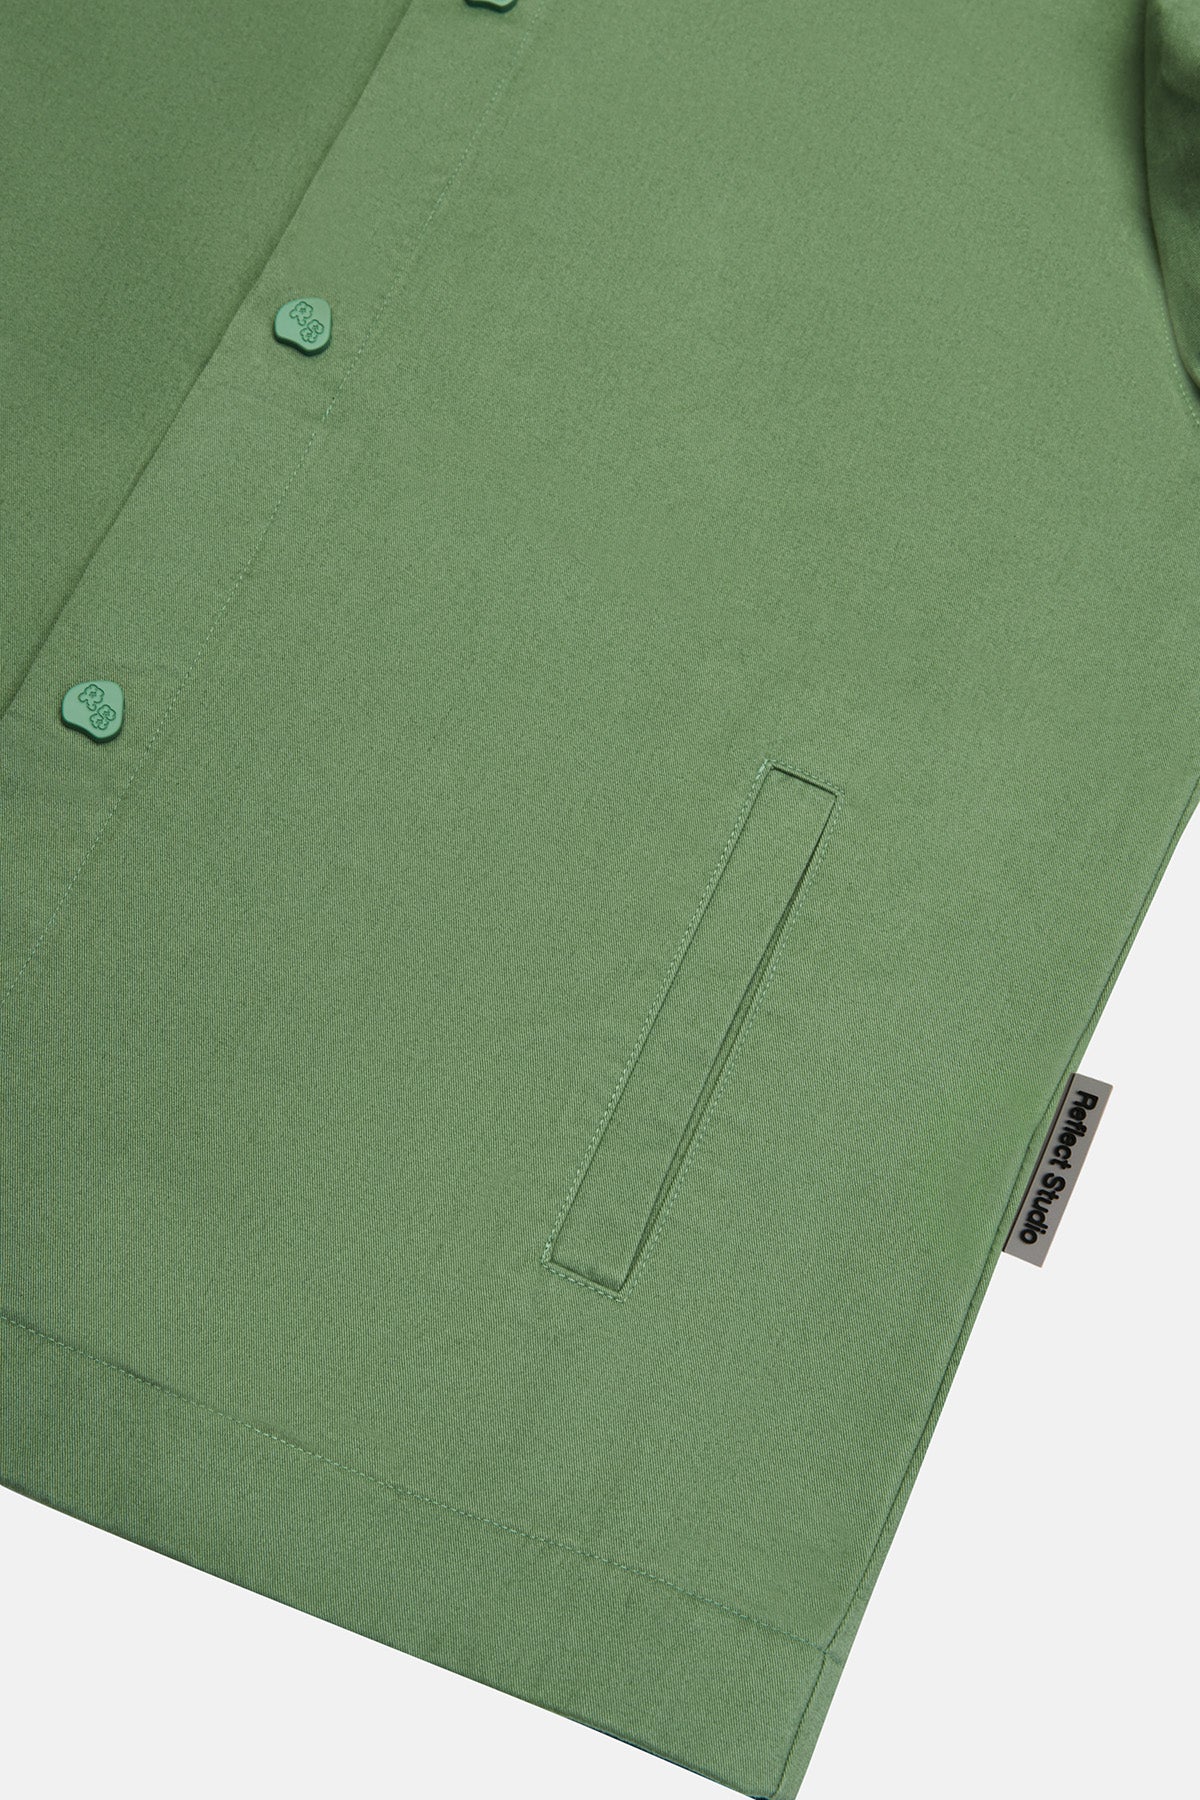 Match Point İnce Ceket - Yeşil